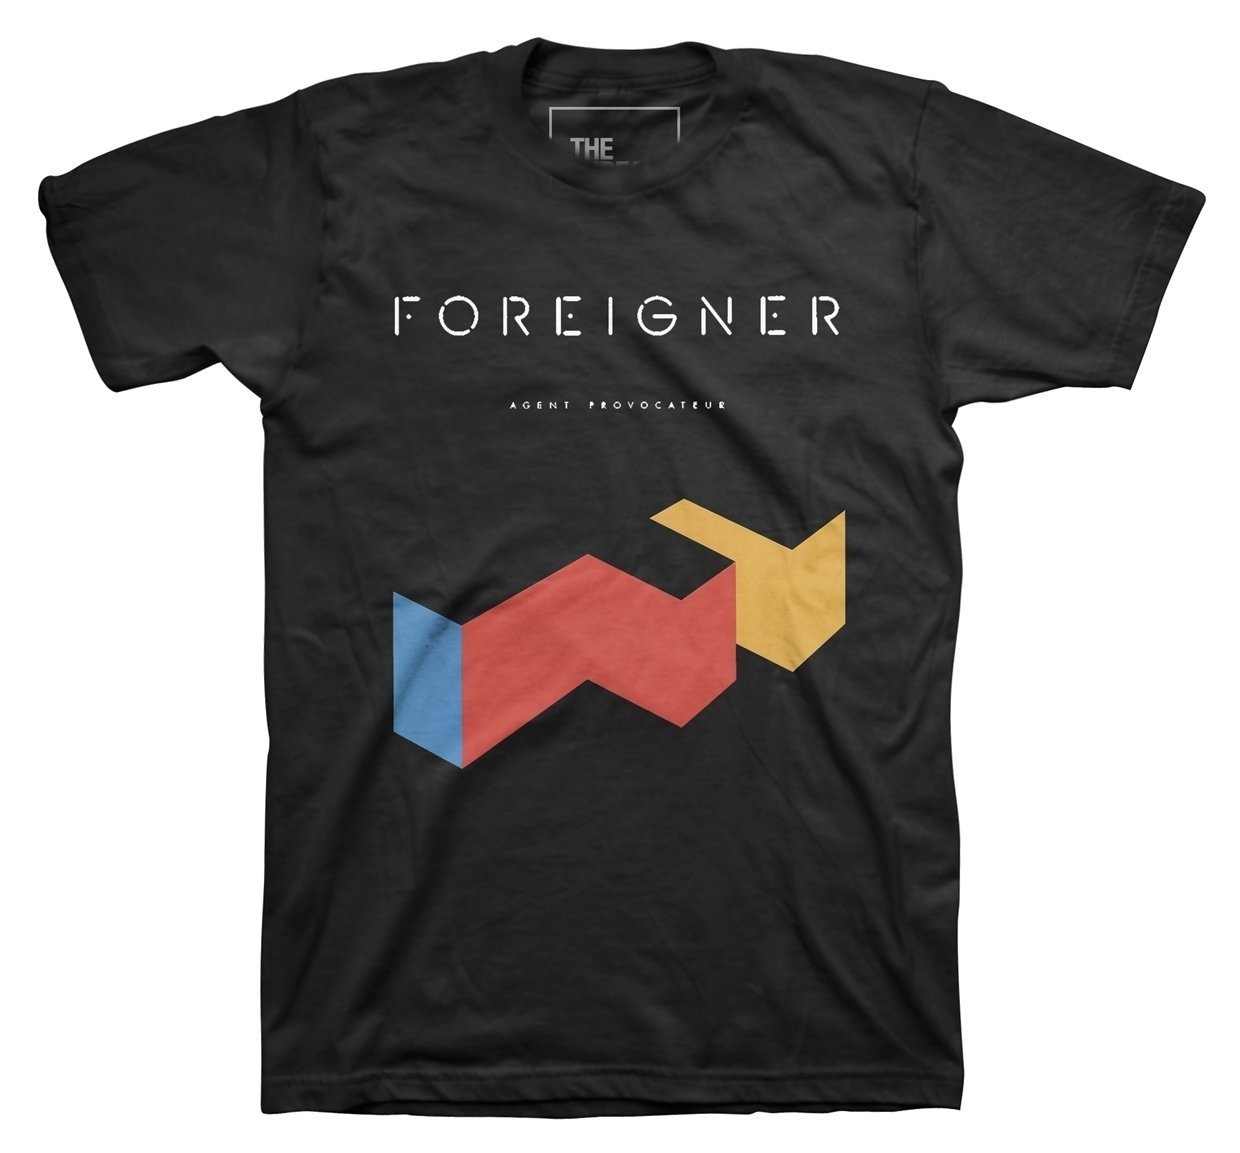 T-Shirt Foreigner T-Shirt Agent Provocateur Male Black S